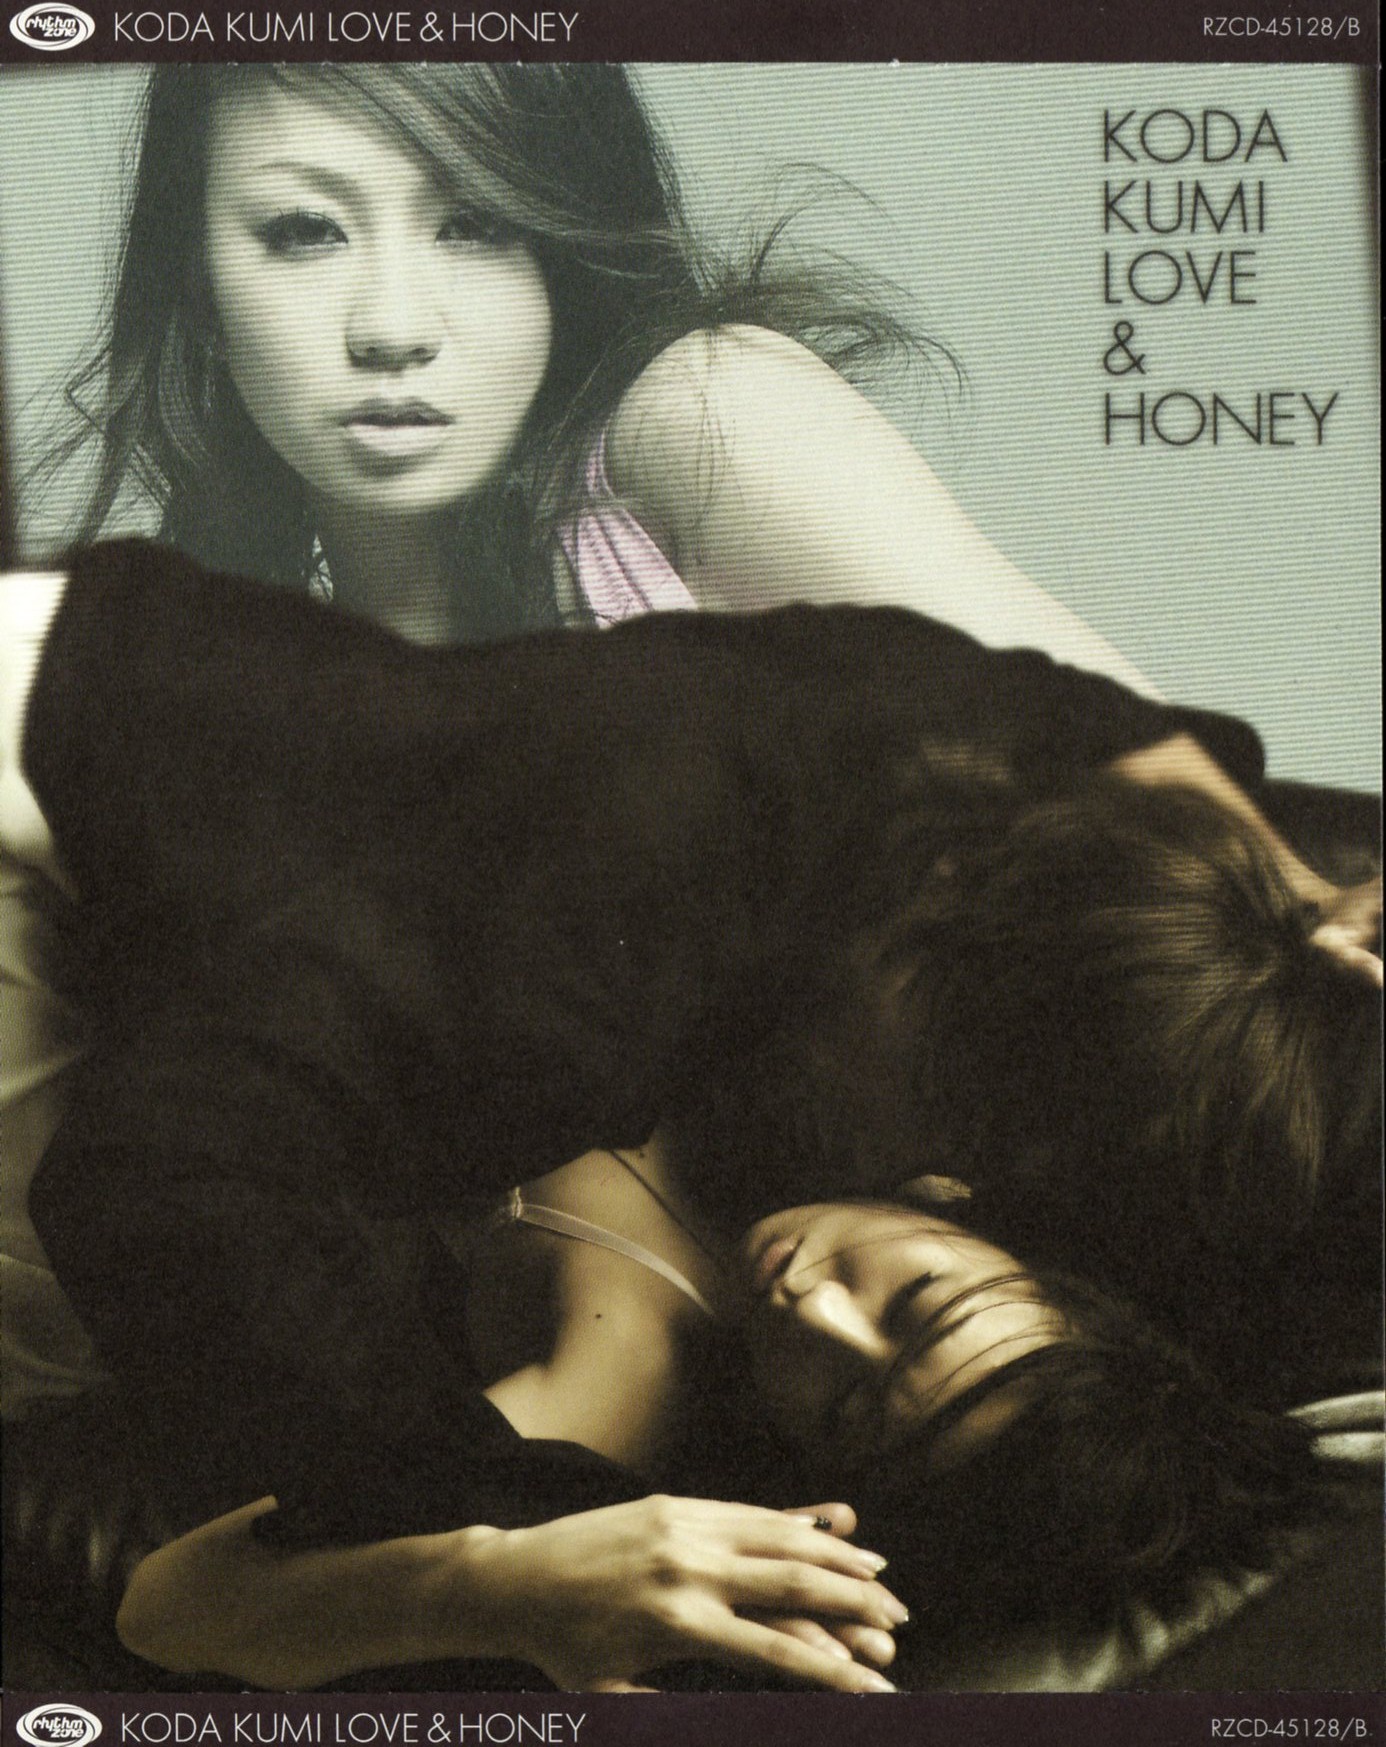 LOVE & HONEY (CD+DVD)